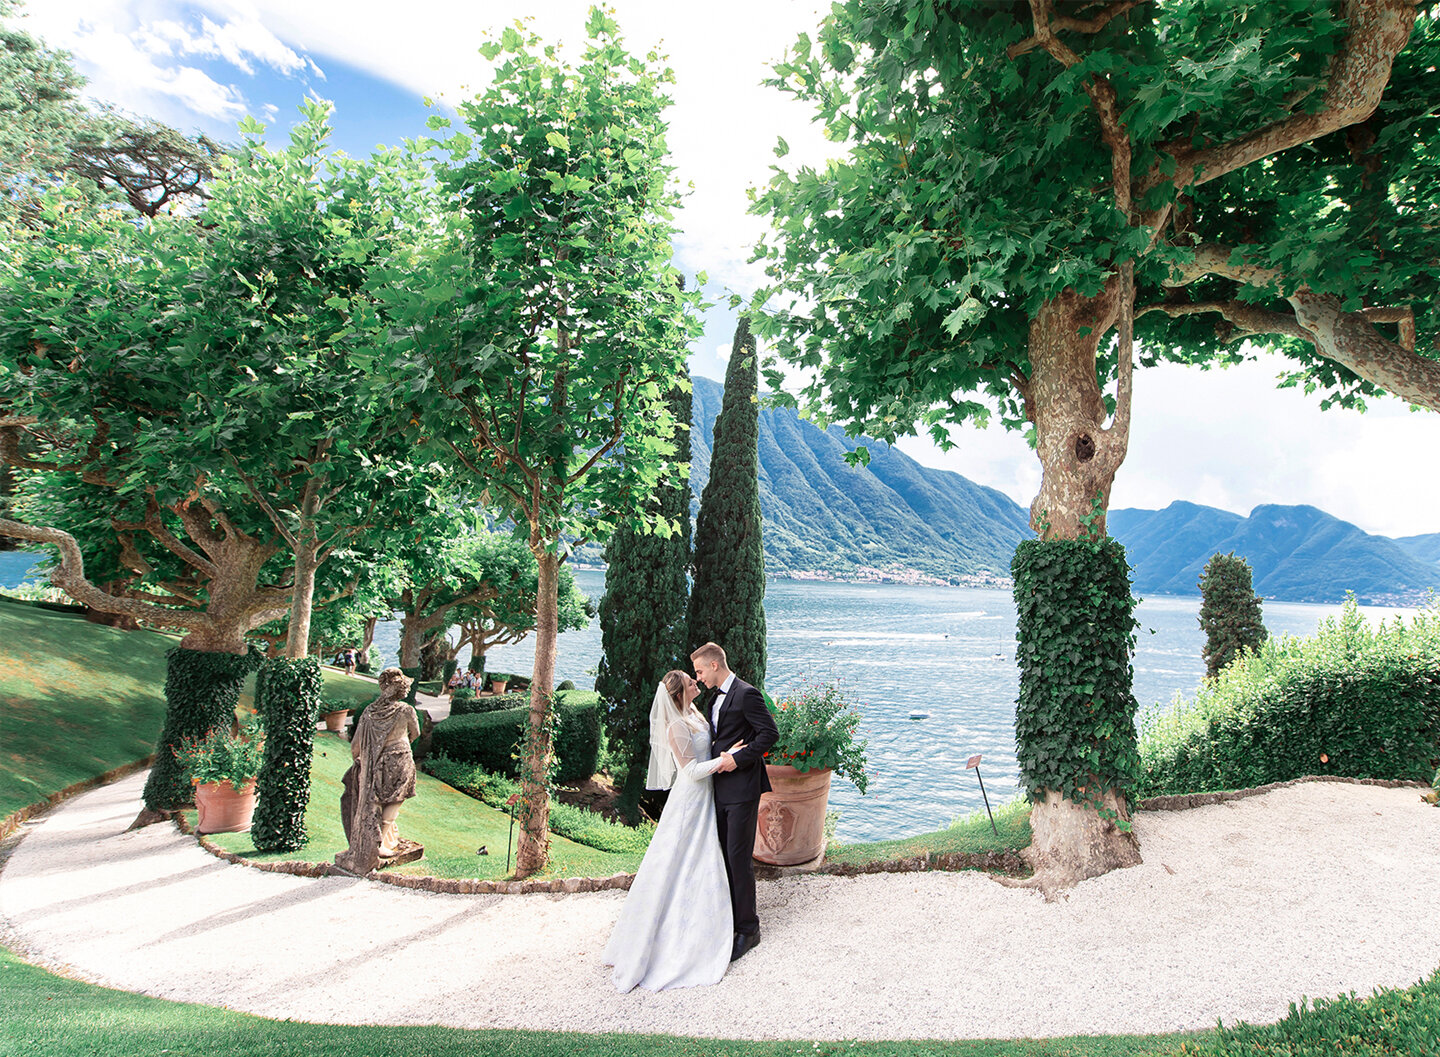 Bride and groom in Villa del Balbianello park